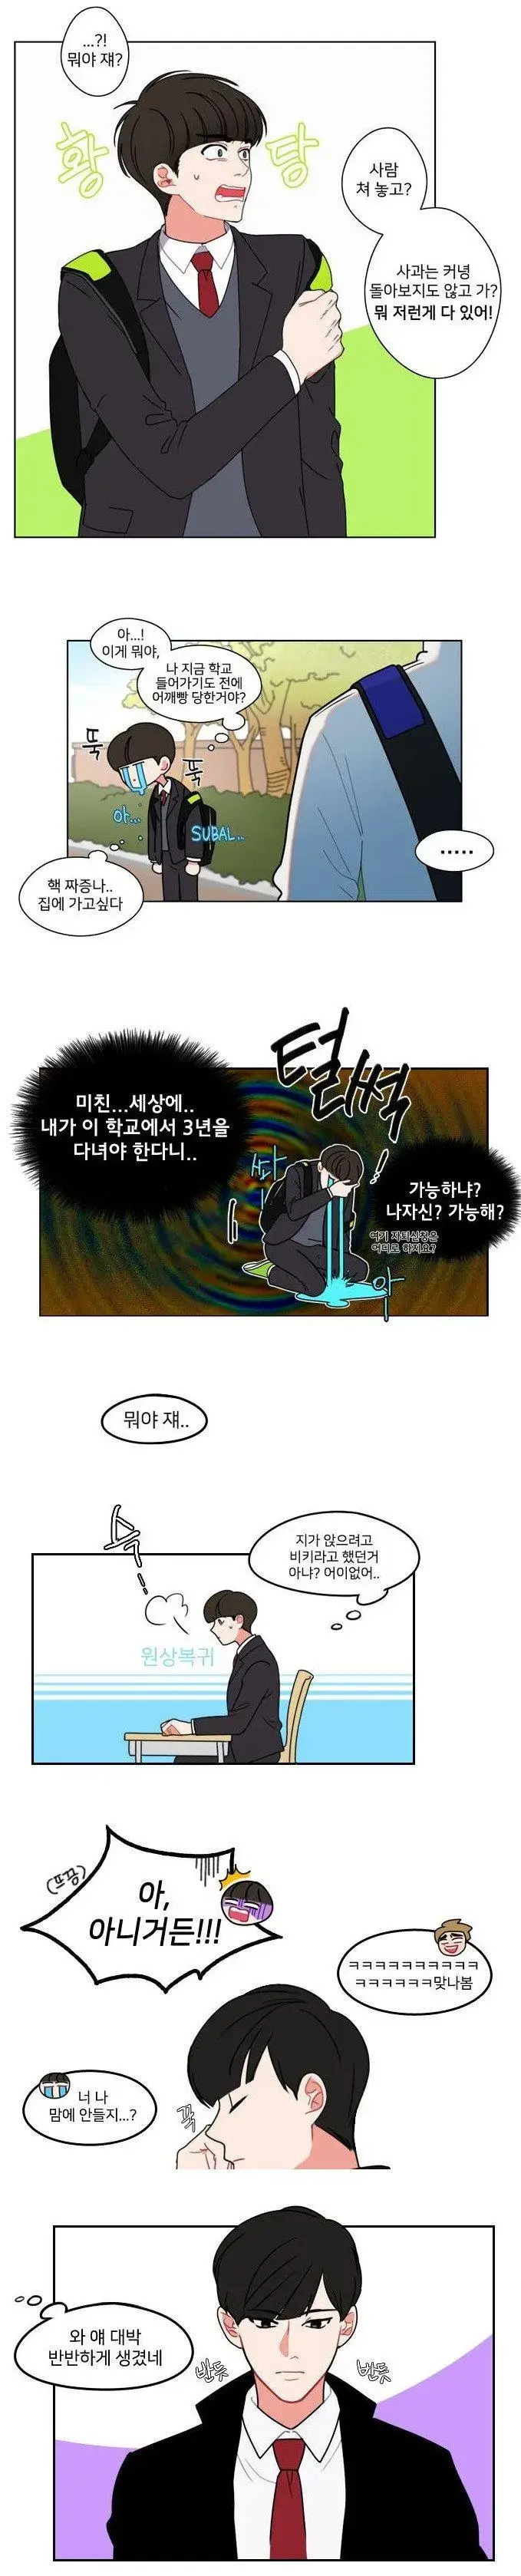 네이버 웹툰 고딩 vs 김성모 만화 중딩 | mbong.kr 엠봉